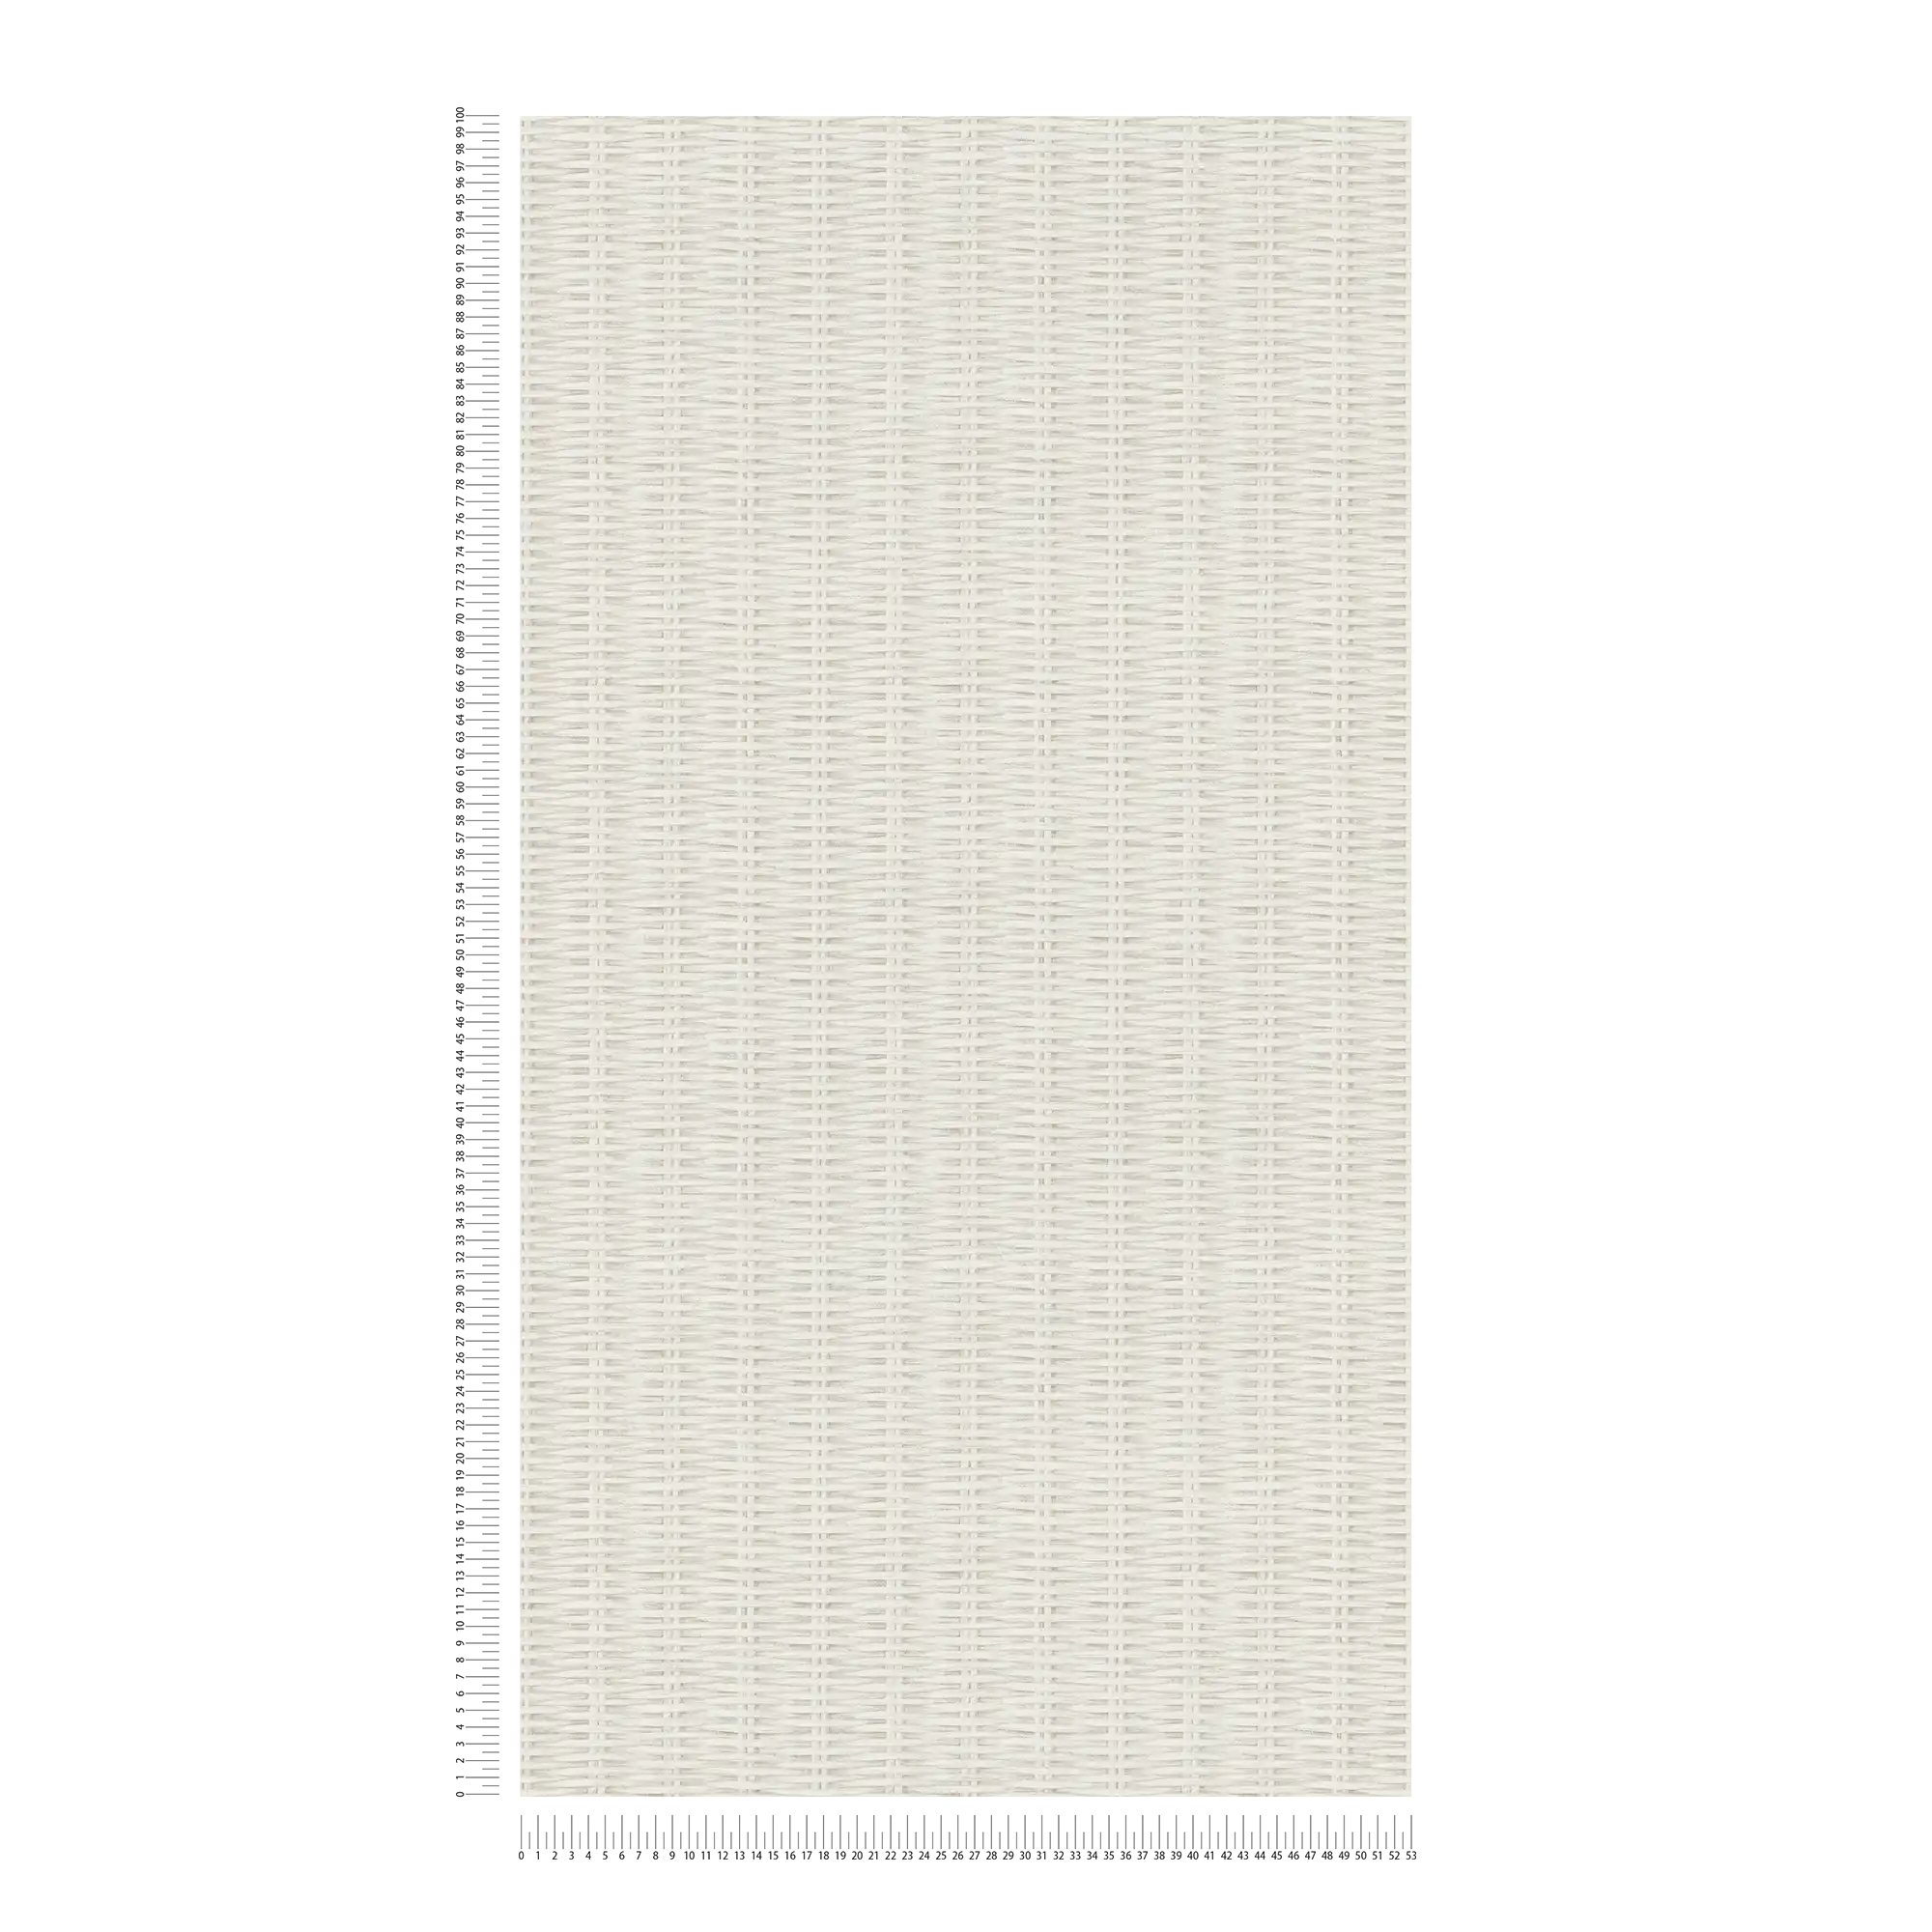             Carta da parati in tessuto non tessuto motivo rattan - bianco, grigio
        